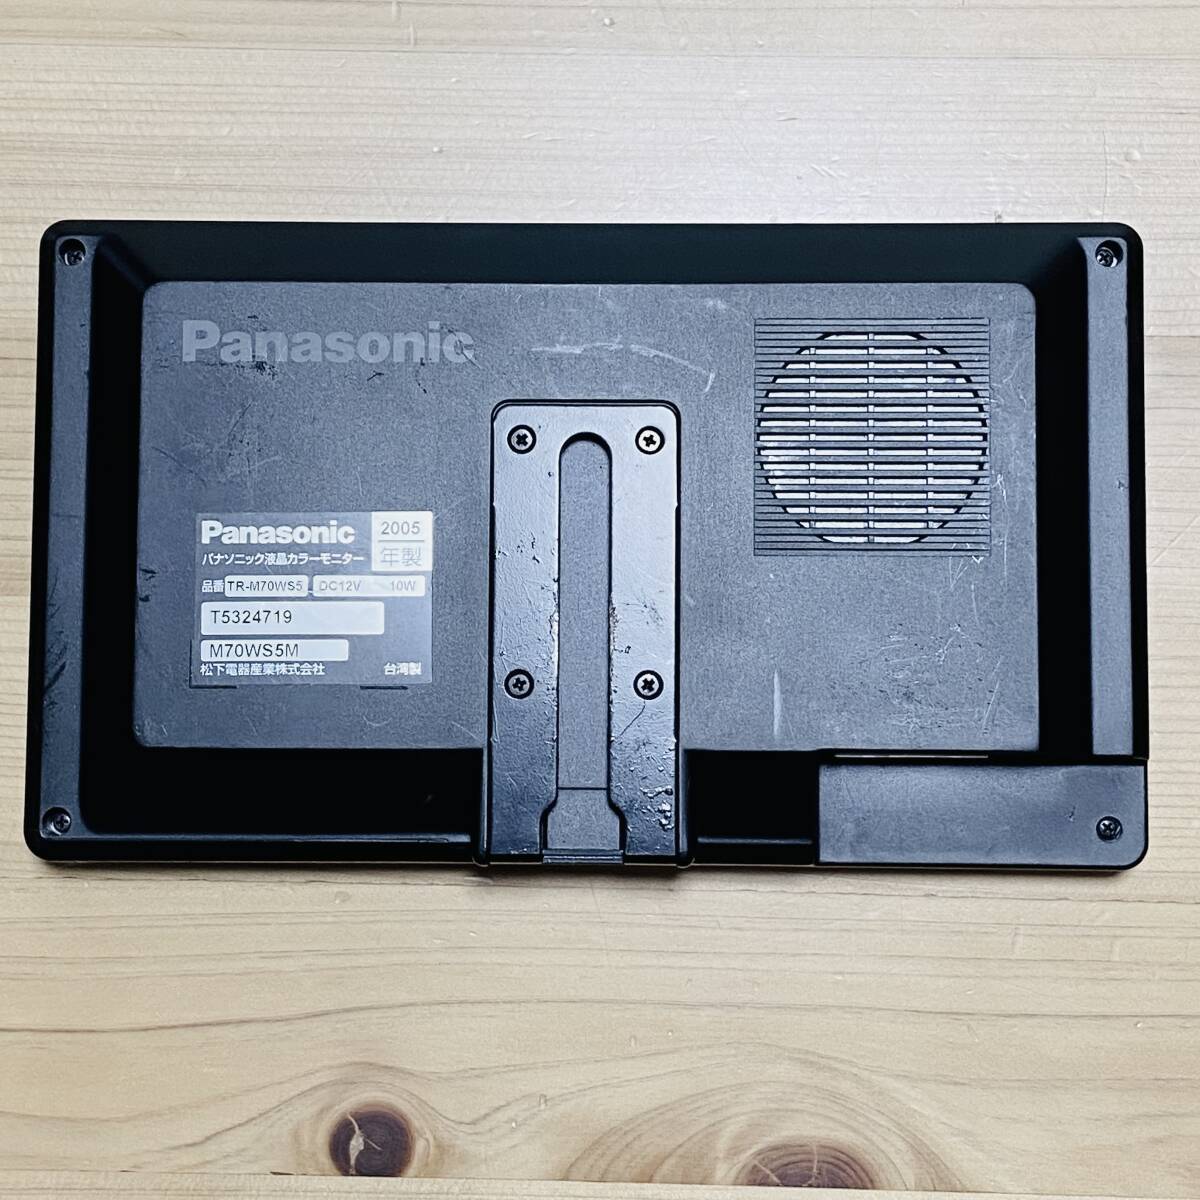 【当時品】Panasonic パナソニック液晶カラーモニター TR-M70WS5 / 車載用モニターハイダウェイユニット M70WS5H カーナビ オーディオ_画像3